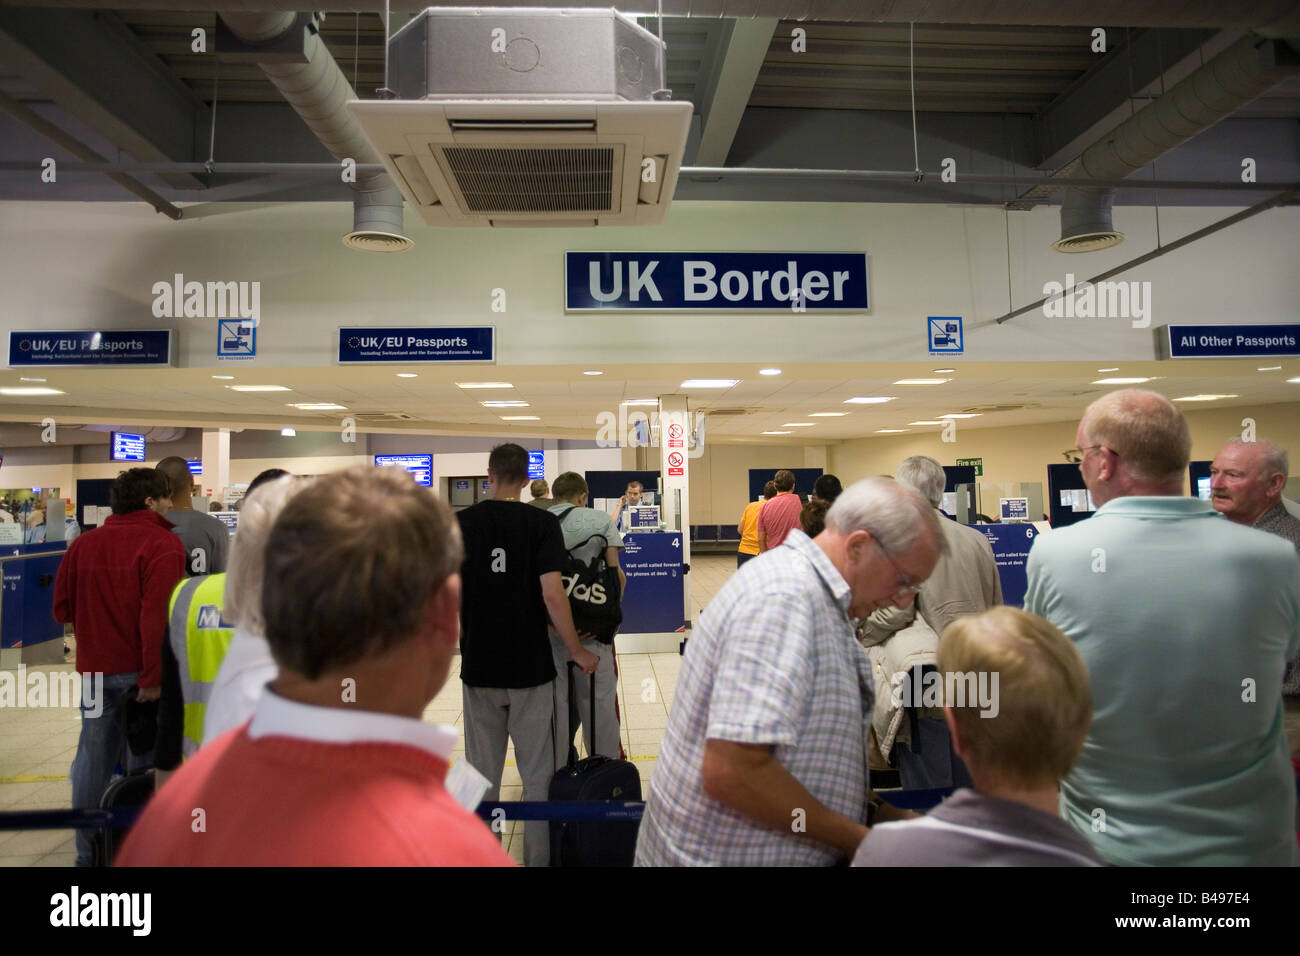 Personnes en attente à l'immigration UK Border, l'aéroport de Luton, Angleterre, Grande-Bretagne, Europe. Banque D'Images